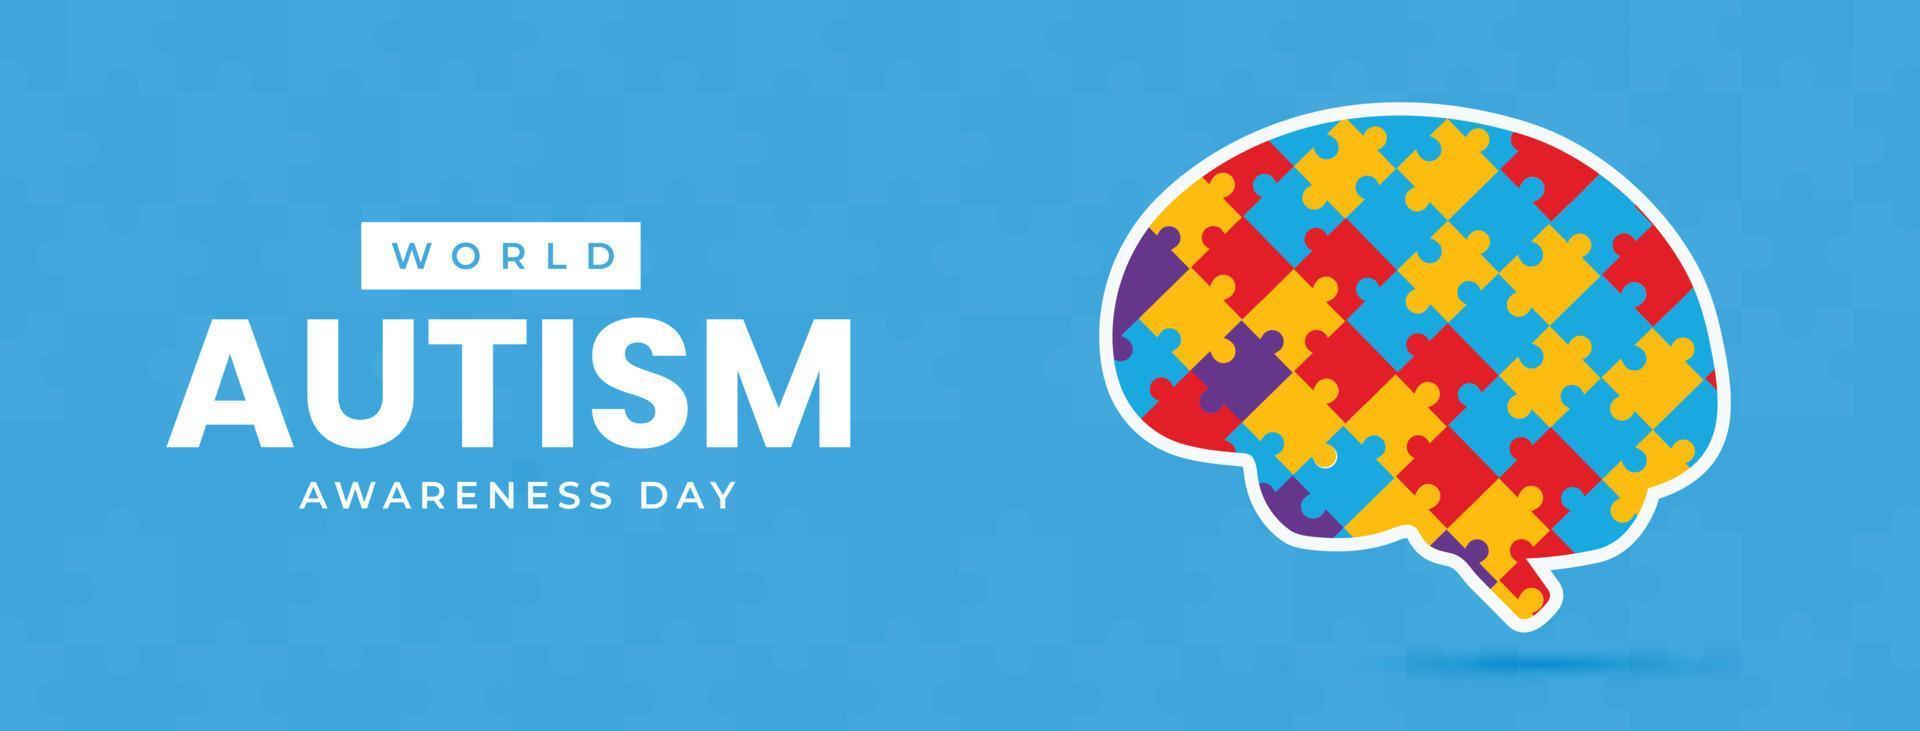 illustration plate de la journée mondiale de sensibilisation à l'autisme vecteur